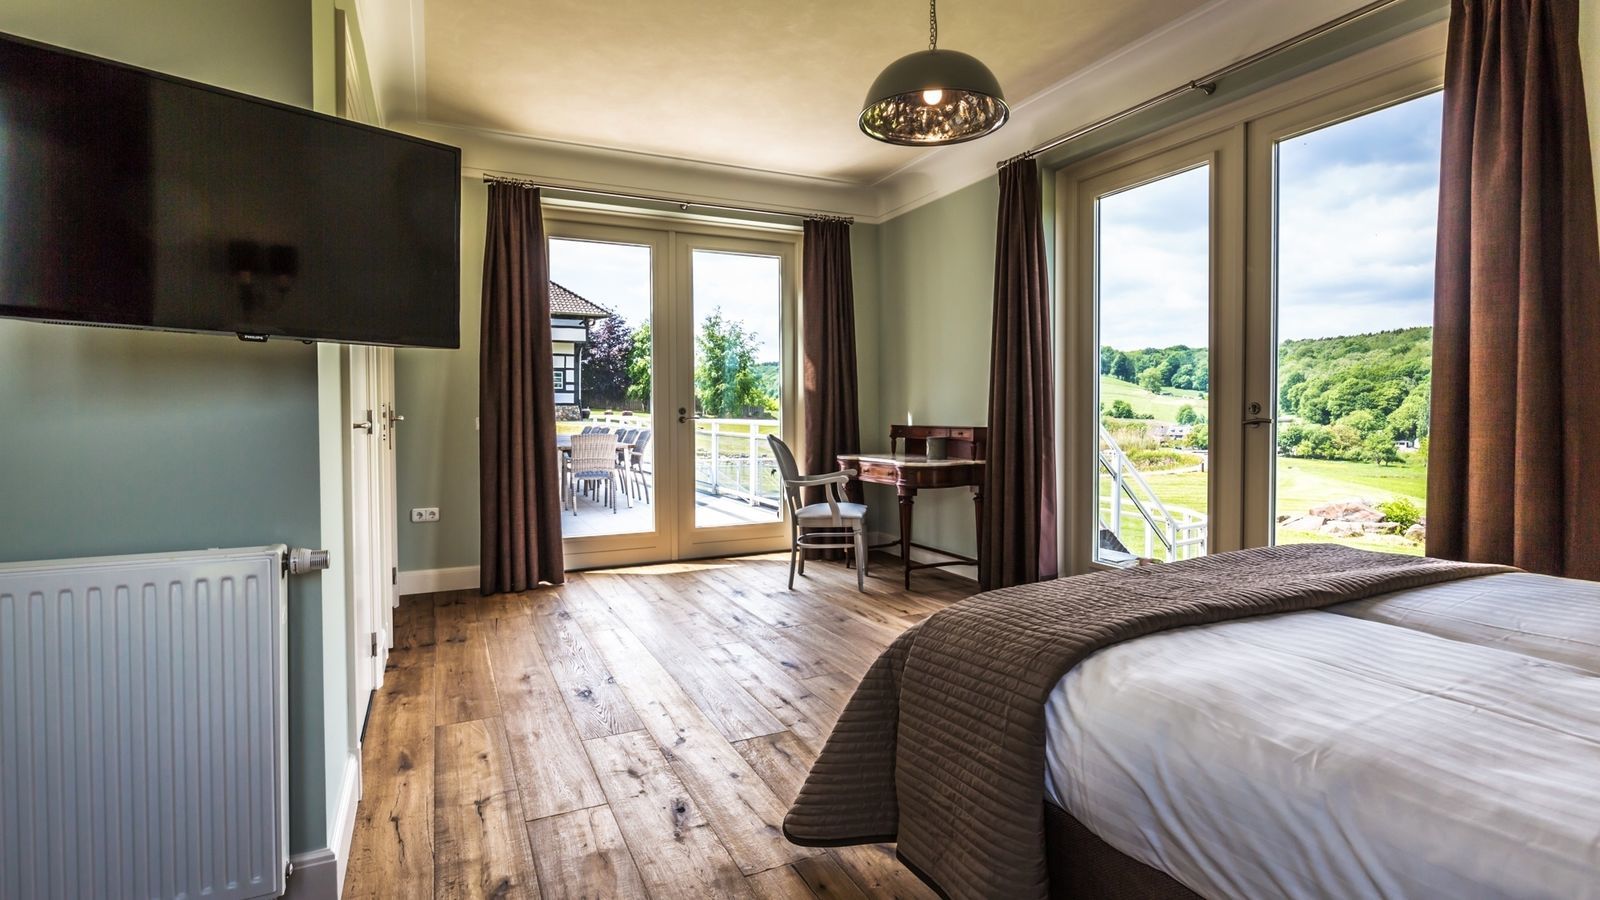 Villapparte-Special Villa's-luxe vakantiehuis voor 21 personen-binnen zwembad-sauna-groepsaccommodatie-Zuid Limburg-slaapkamer met prachtig uitzicht